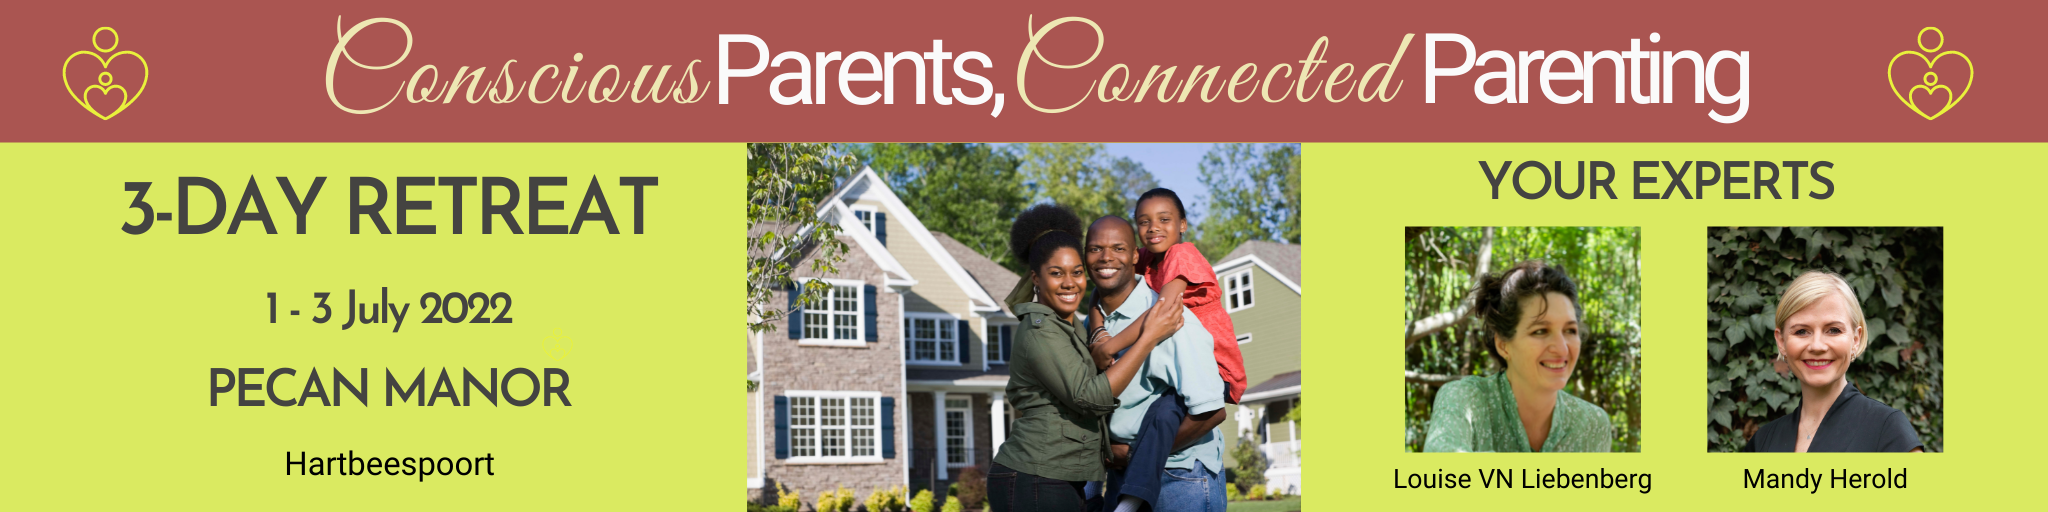 Conscious Parents Connected Parenting Retreat